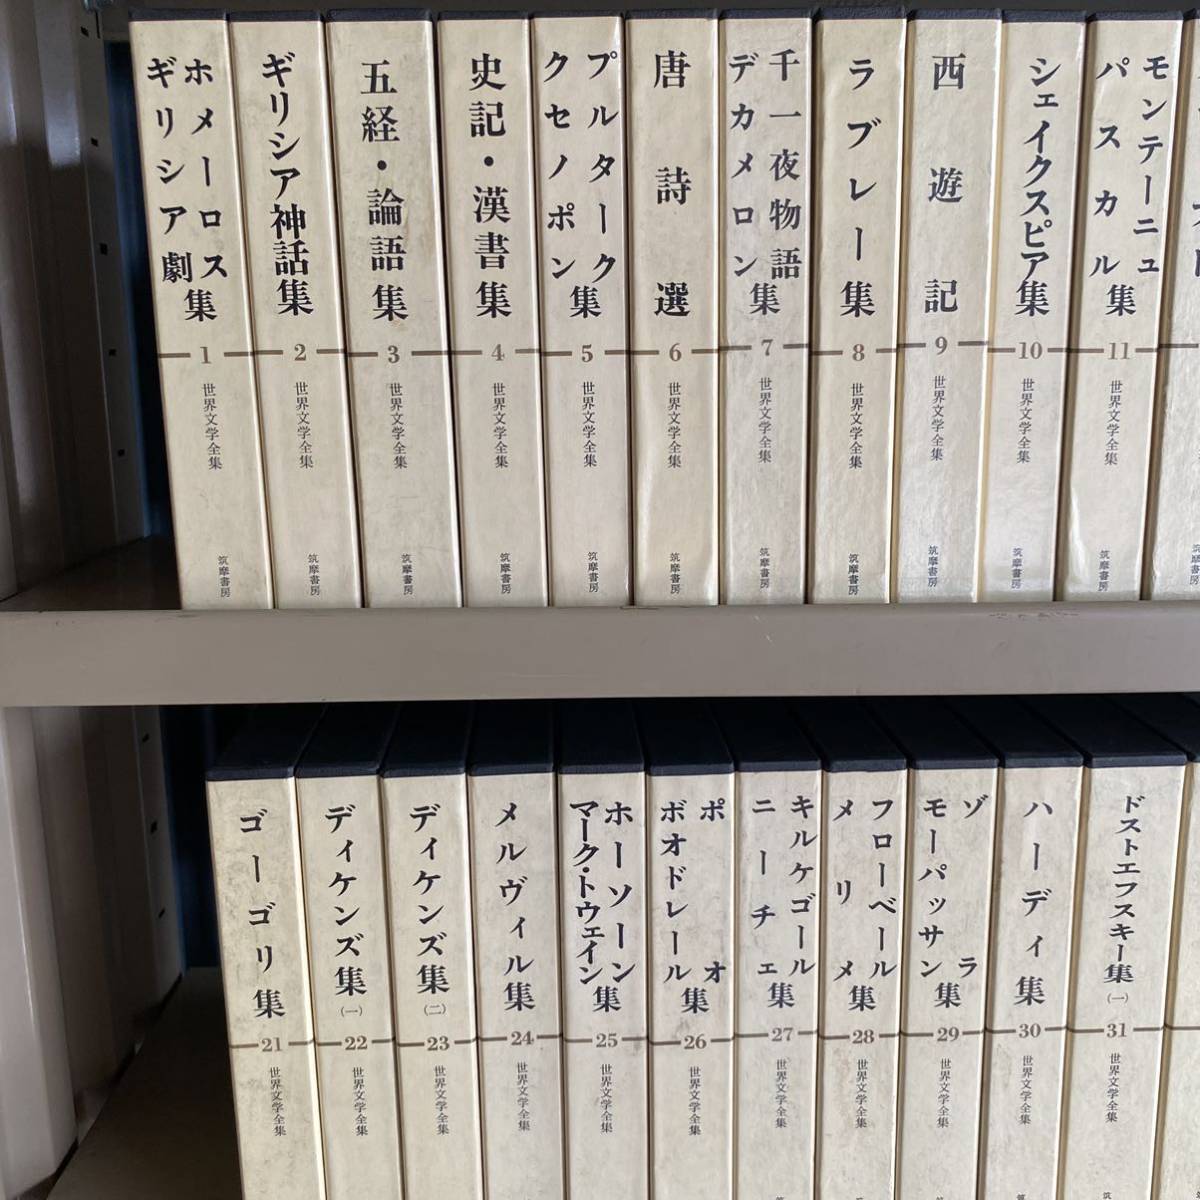 2013】 筑摩書房世界文学全集1-70巻まとめて《BE》 | JChere雅虎拍卖代购